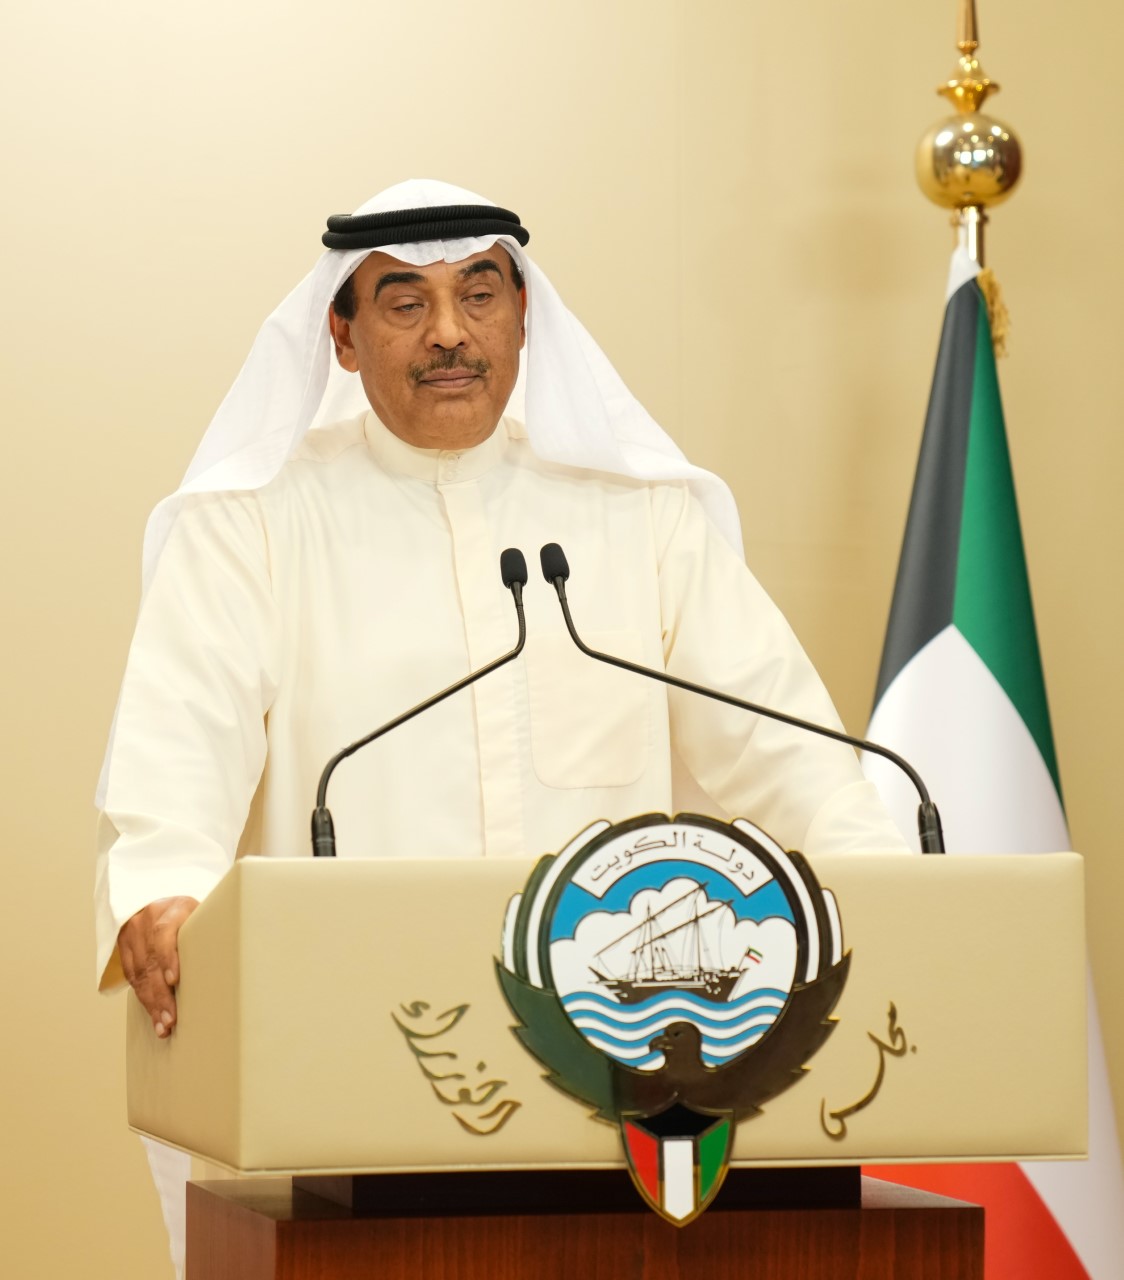 سمو الشيخ صباح خالد الحمد الصباح رئيس مجلس الوزراء متحدثا خلال المؤتمر الصحفي